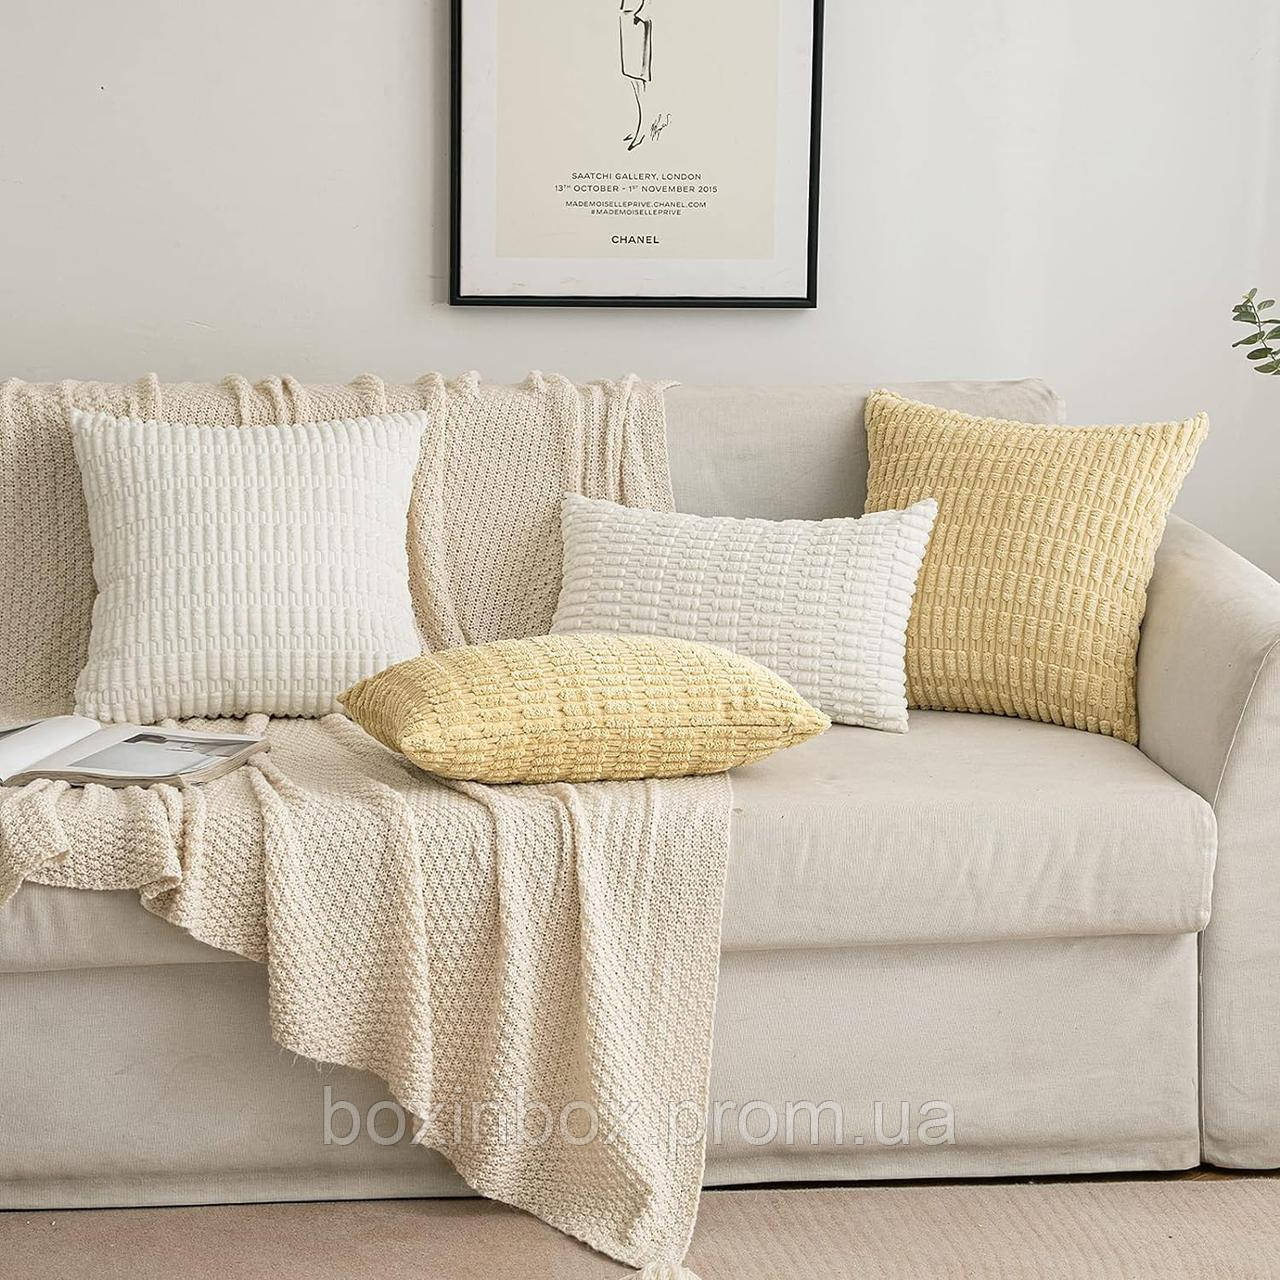 Наволочки EMEMA Corduroy, декоративні наволочки на дивани, сучасні наволочки, 40 x 40 см, м'які декоративні наволочки для вітальні